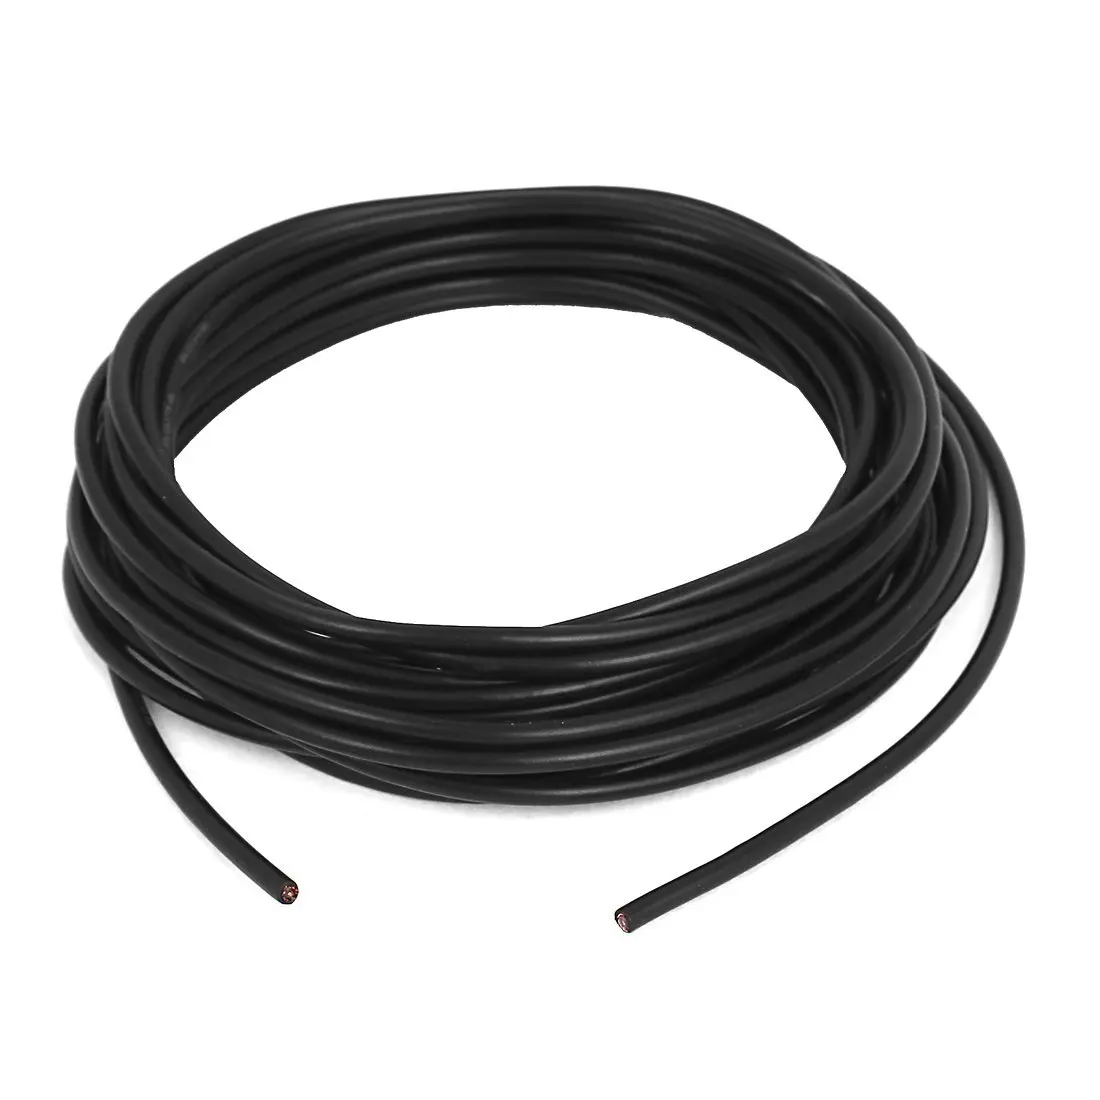 Антенна RG174 Коаксиальный кабель Соединительный шнур WiFi маршрутизатора длиной 5 м черный